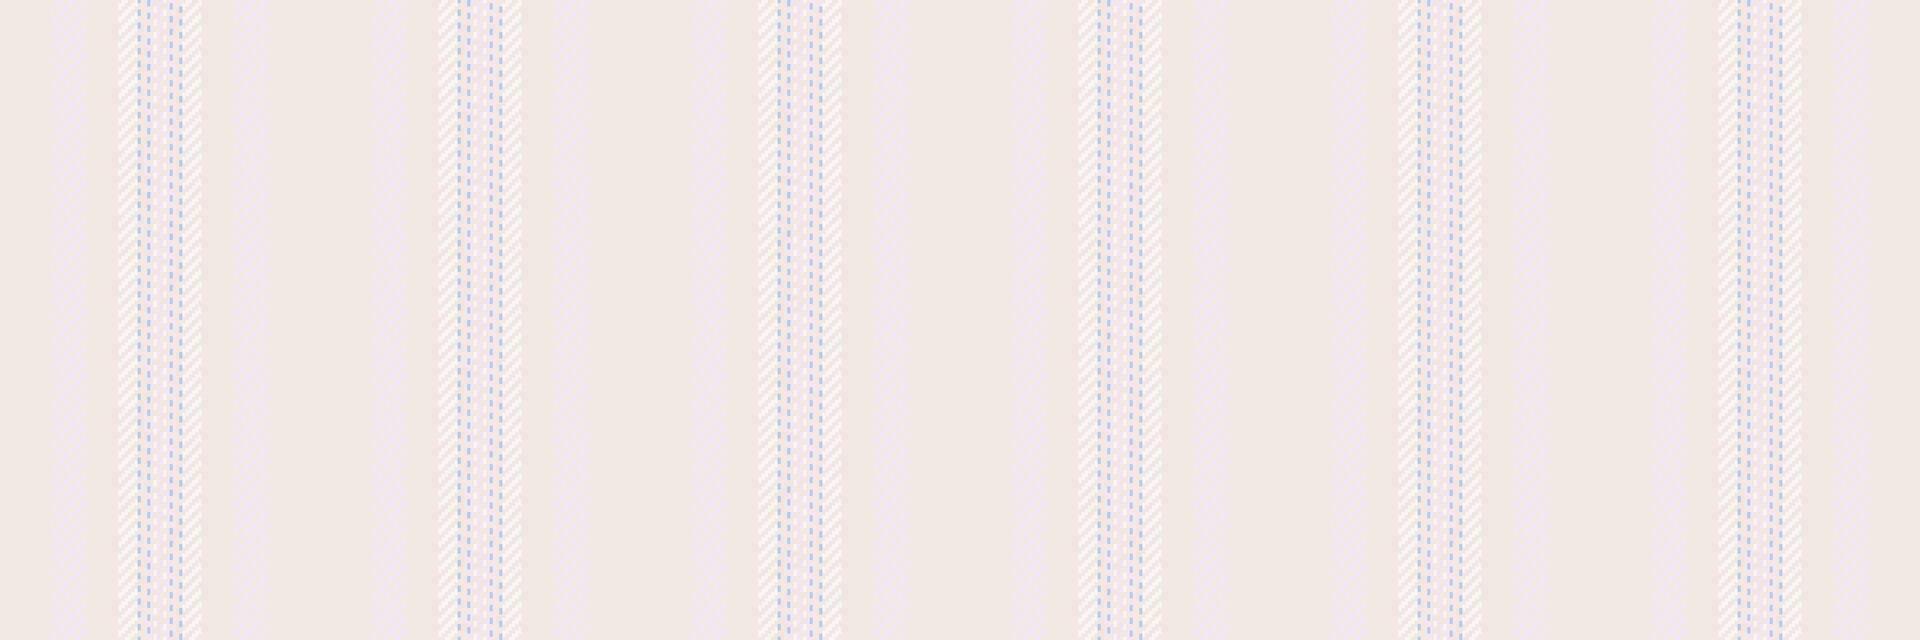 Mutter Vertikale Stoff Linien, Weihnachten Karte Vektor Textil- nahtlos. beschwingt Hintergrund Textur Streifen Muster im Weiß und Lavendel erröten Farben.